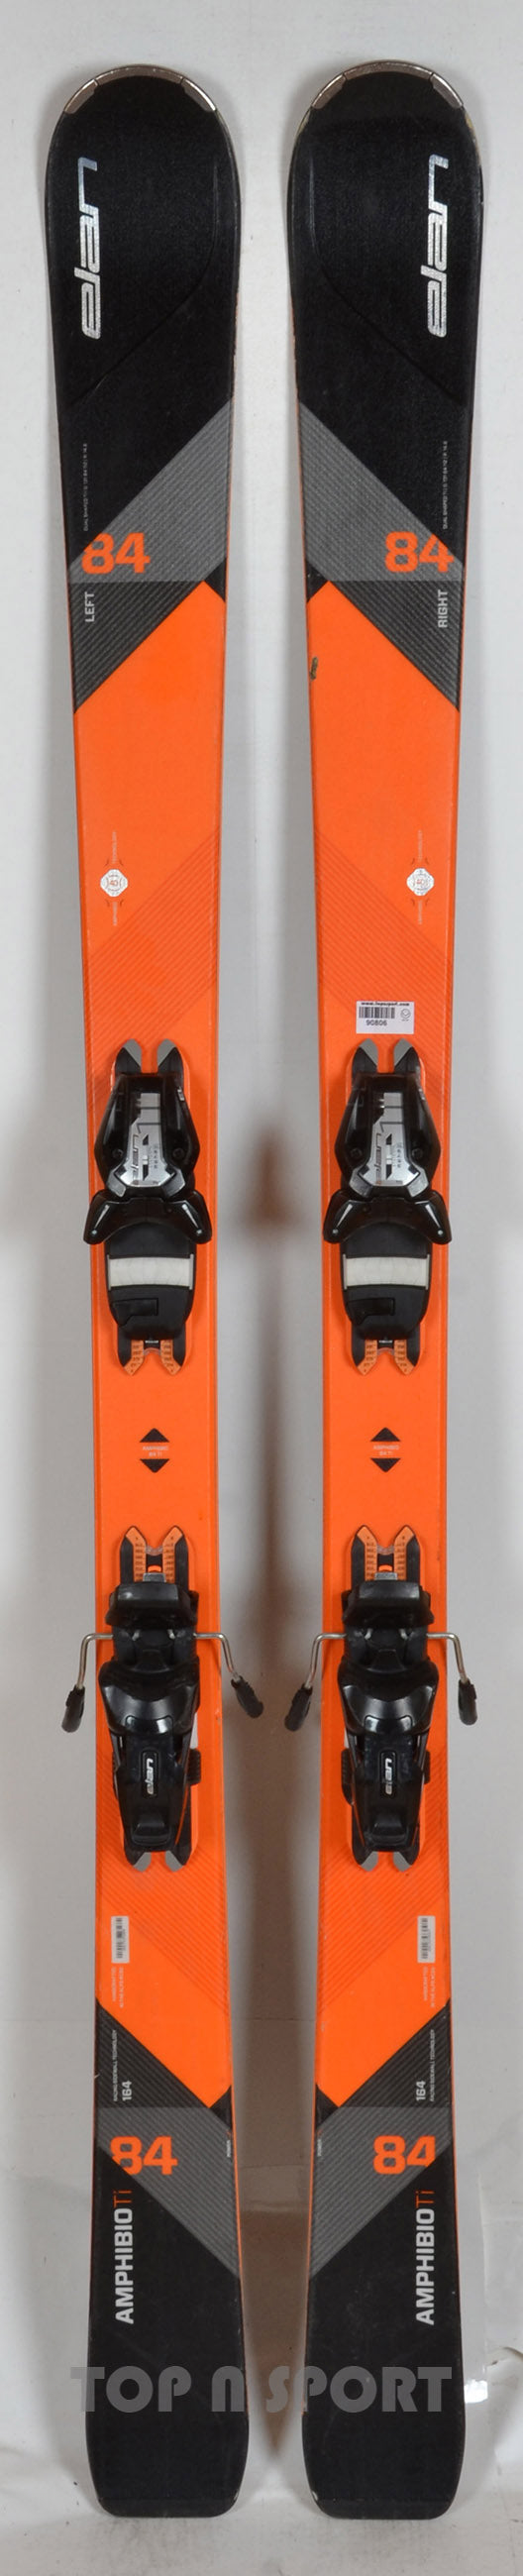 Elan AMPHIBIO 84 Ti black/orange - skis d'occasion